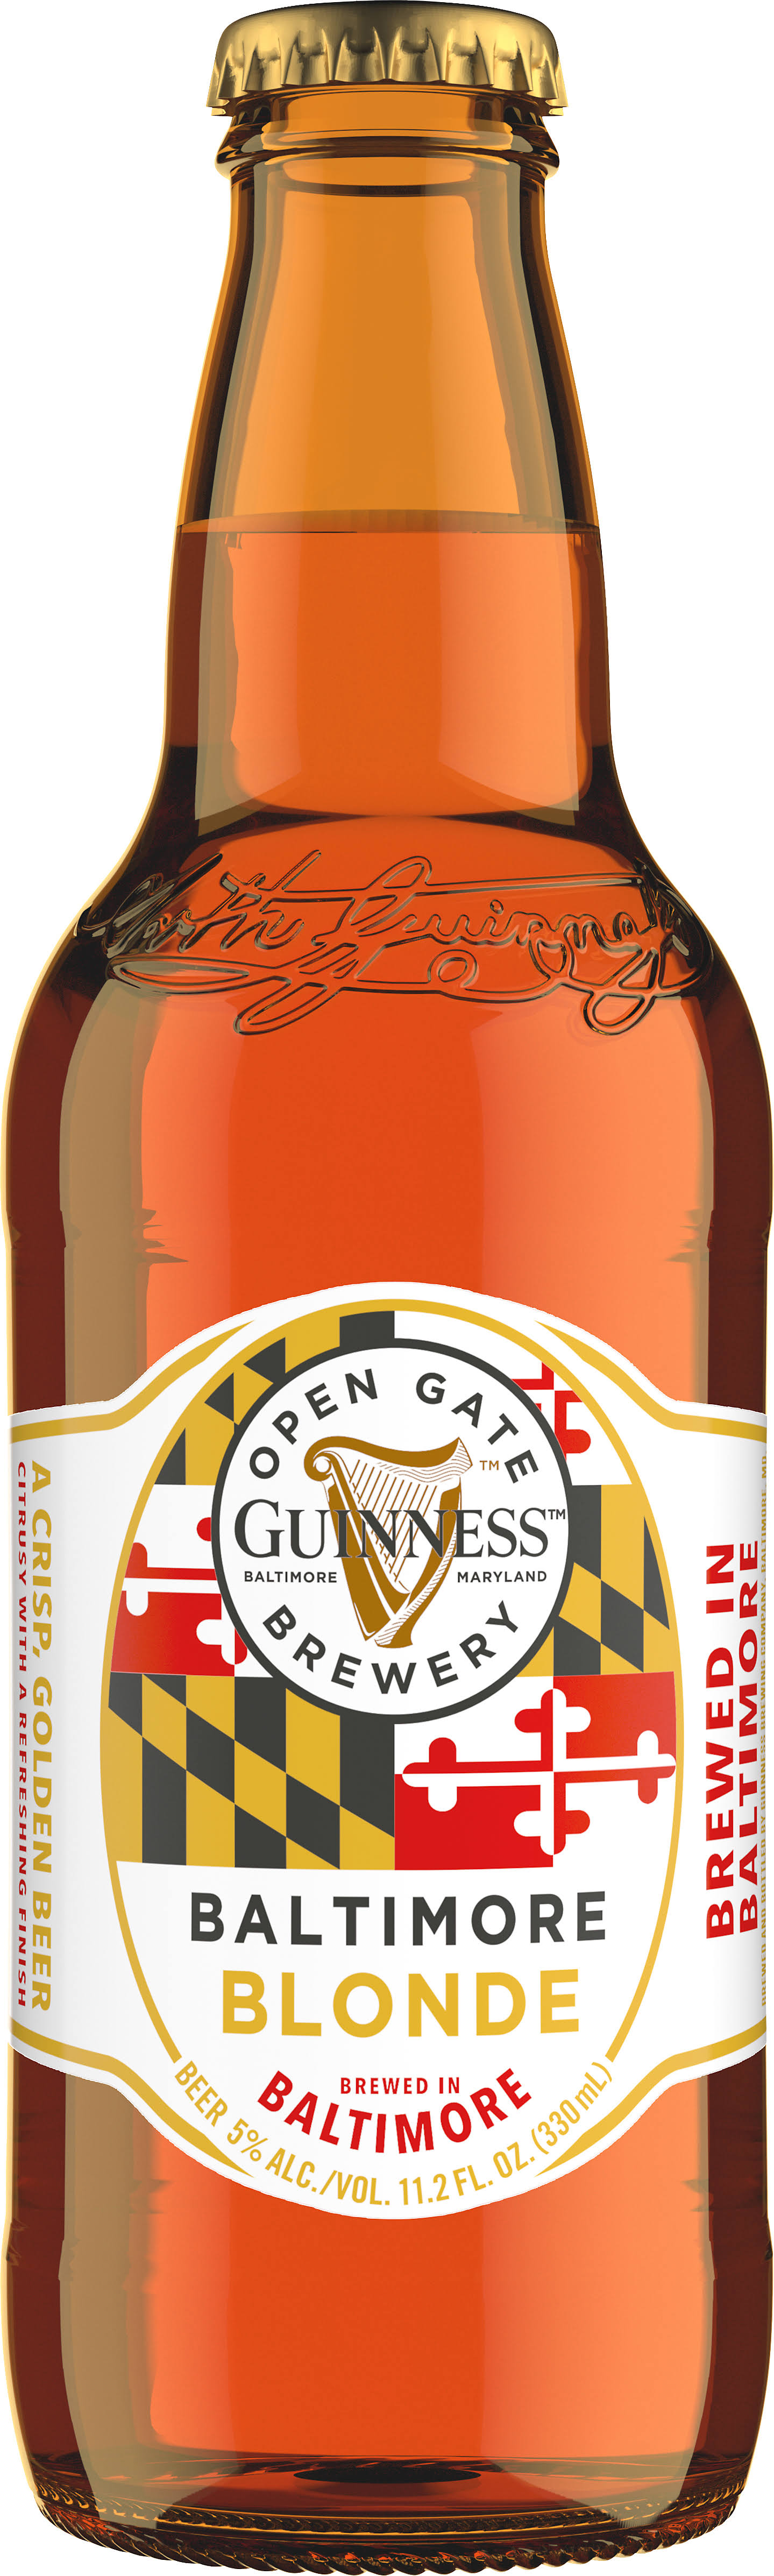 Guinness Blonde American Lager Beer - 6 pack, 12 fl oz bottle